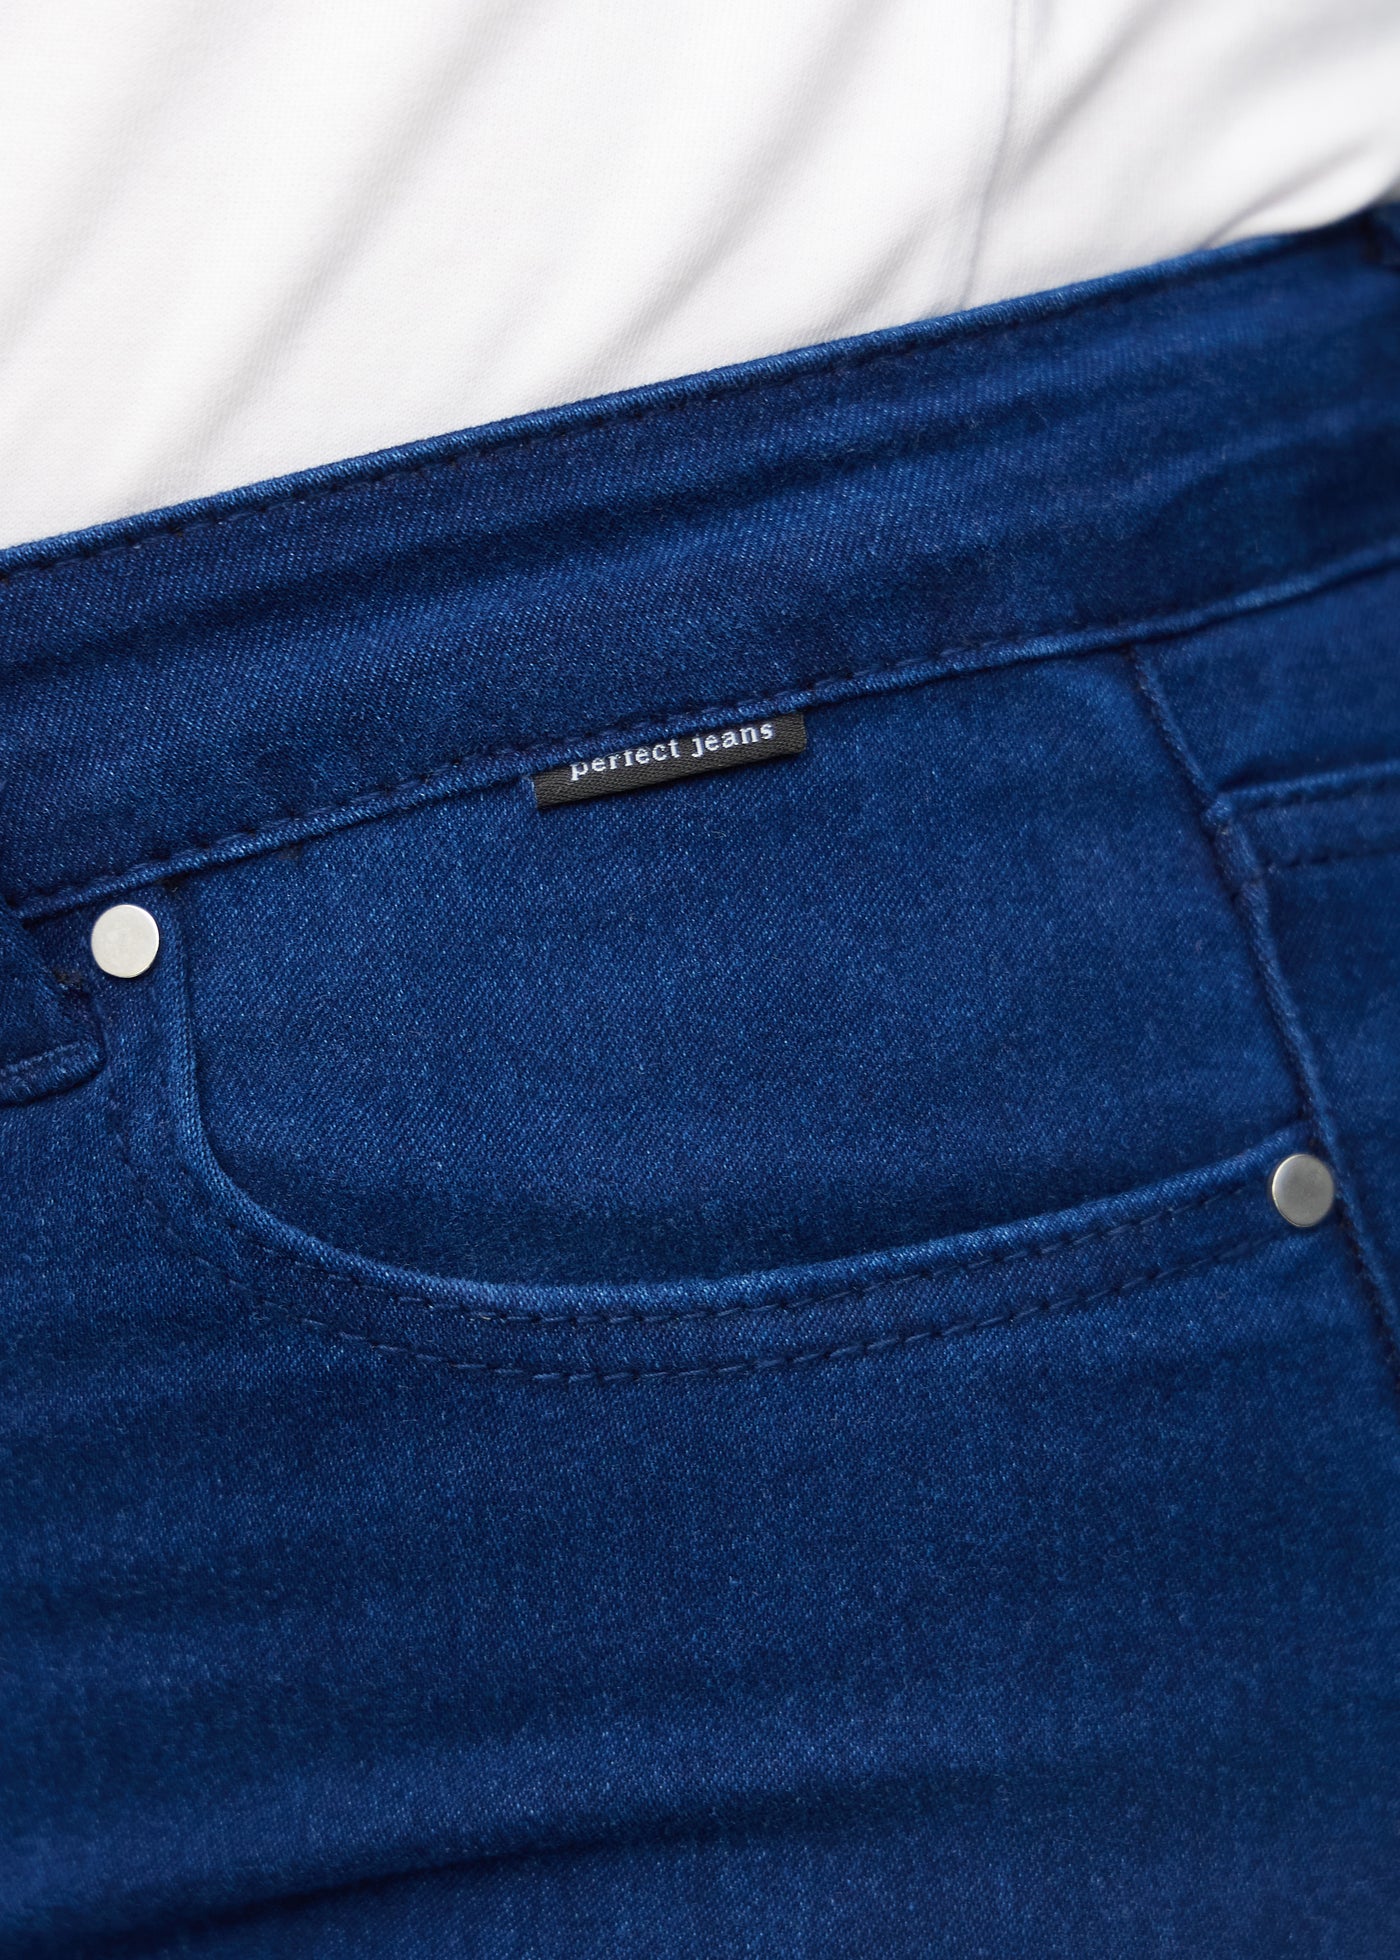 Forlommen på et par mørkeblå jeans, hvor man kan se logoet på en plus-size model.